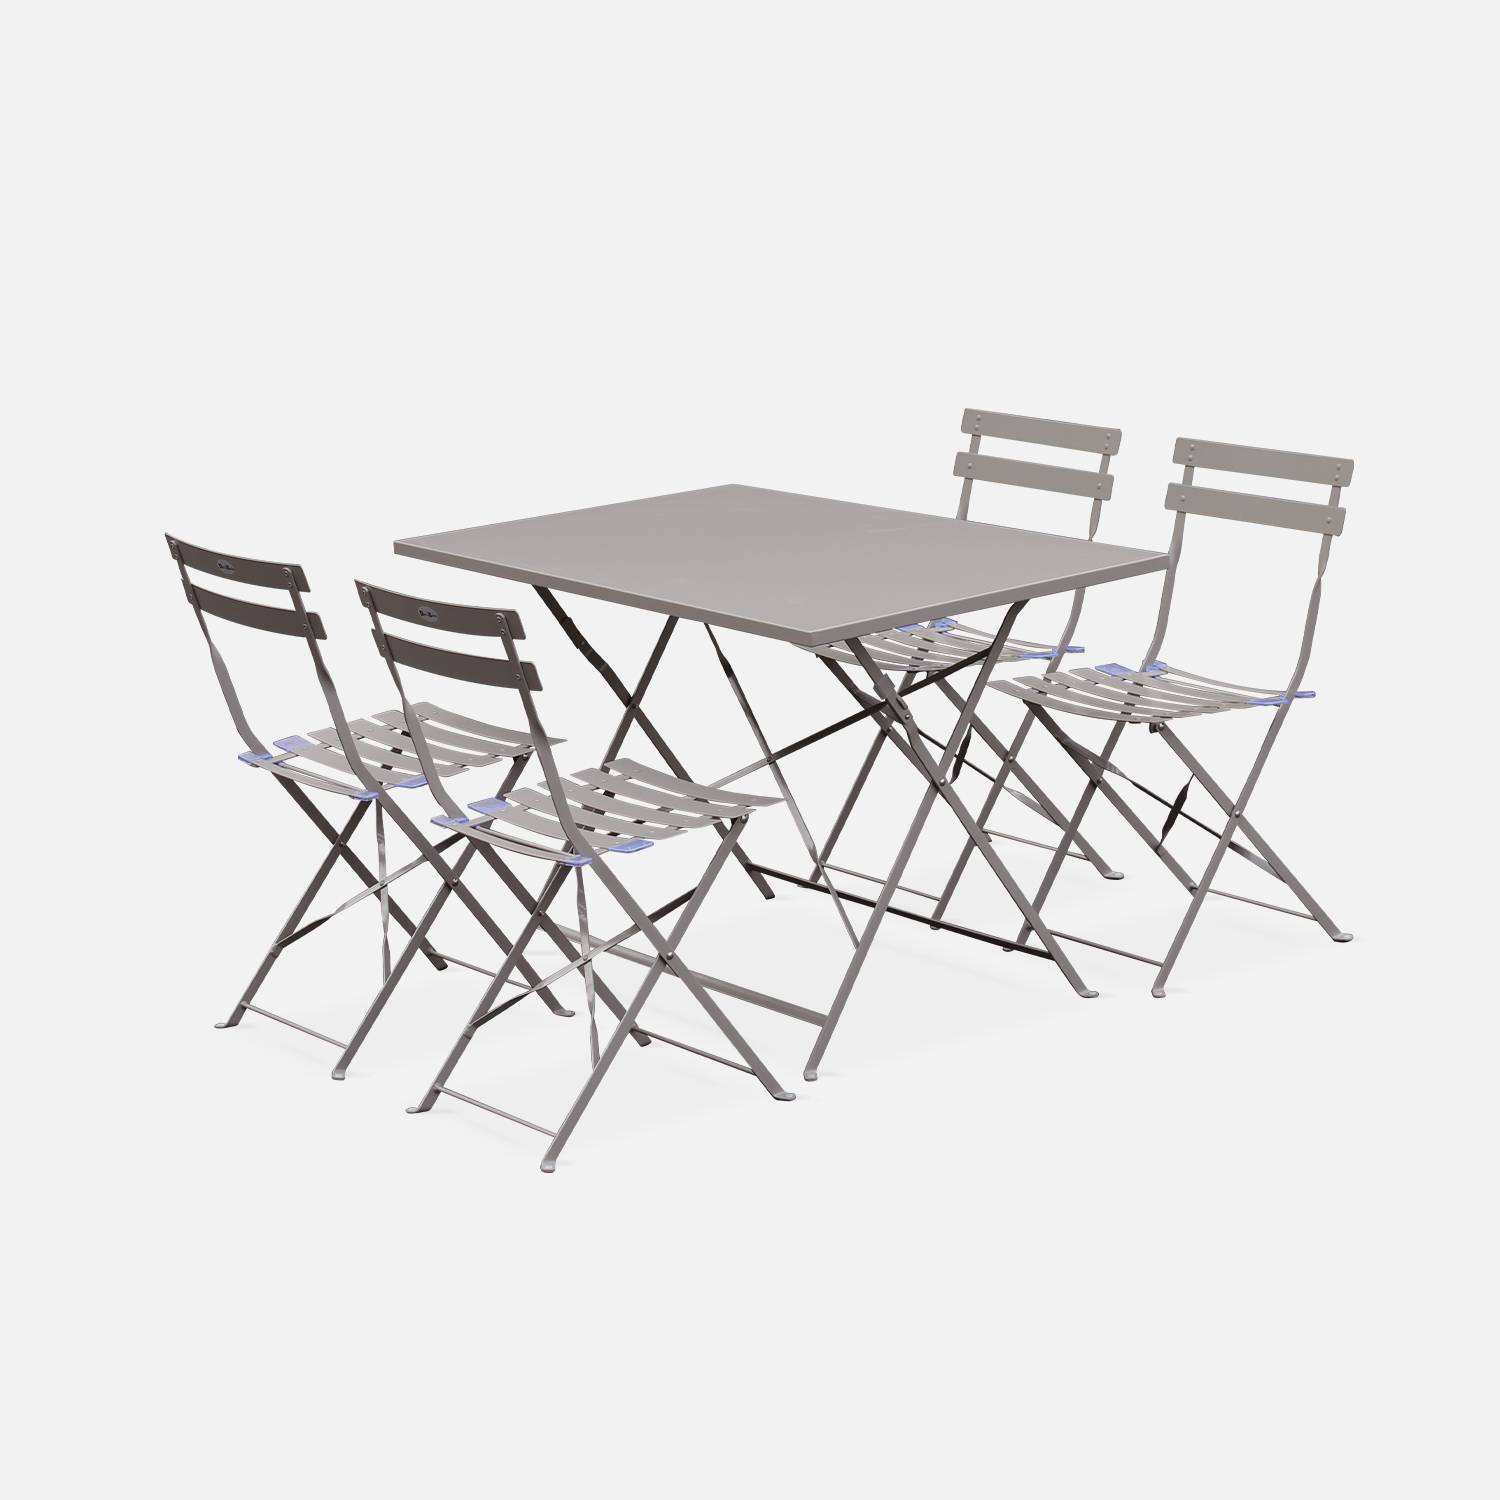 Tavolo da giardino, bar bistrot, pieghevole - modello: Emilia, rettangolare, colore: Grigio bruno - Tavolo, dimensioni: 110x70cm, con quattro sedie pieghevoli, acciaio termolaccato Photo2